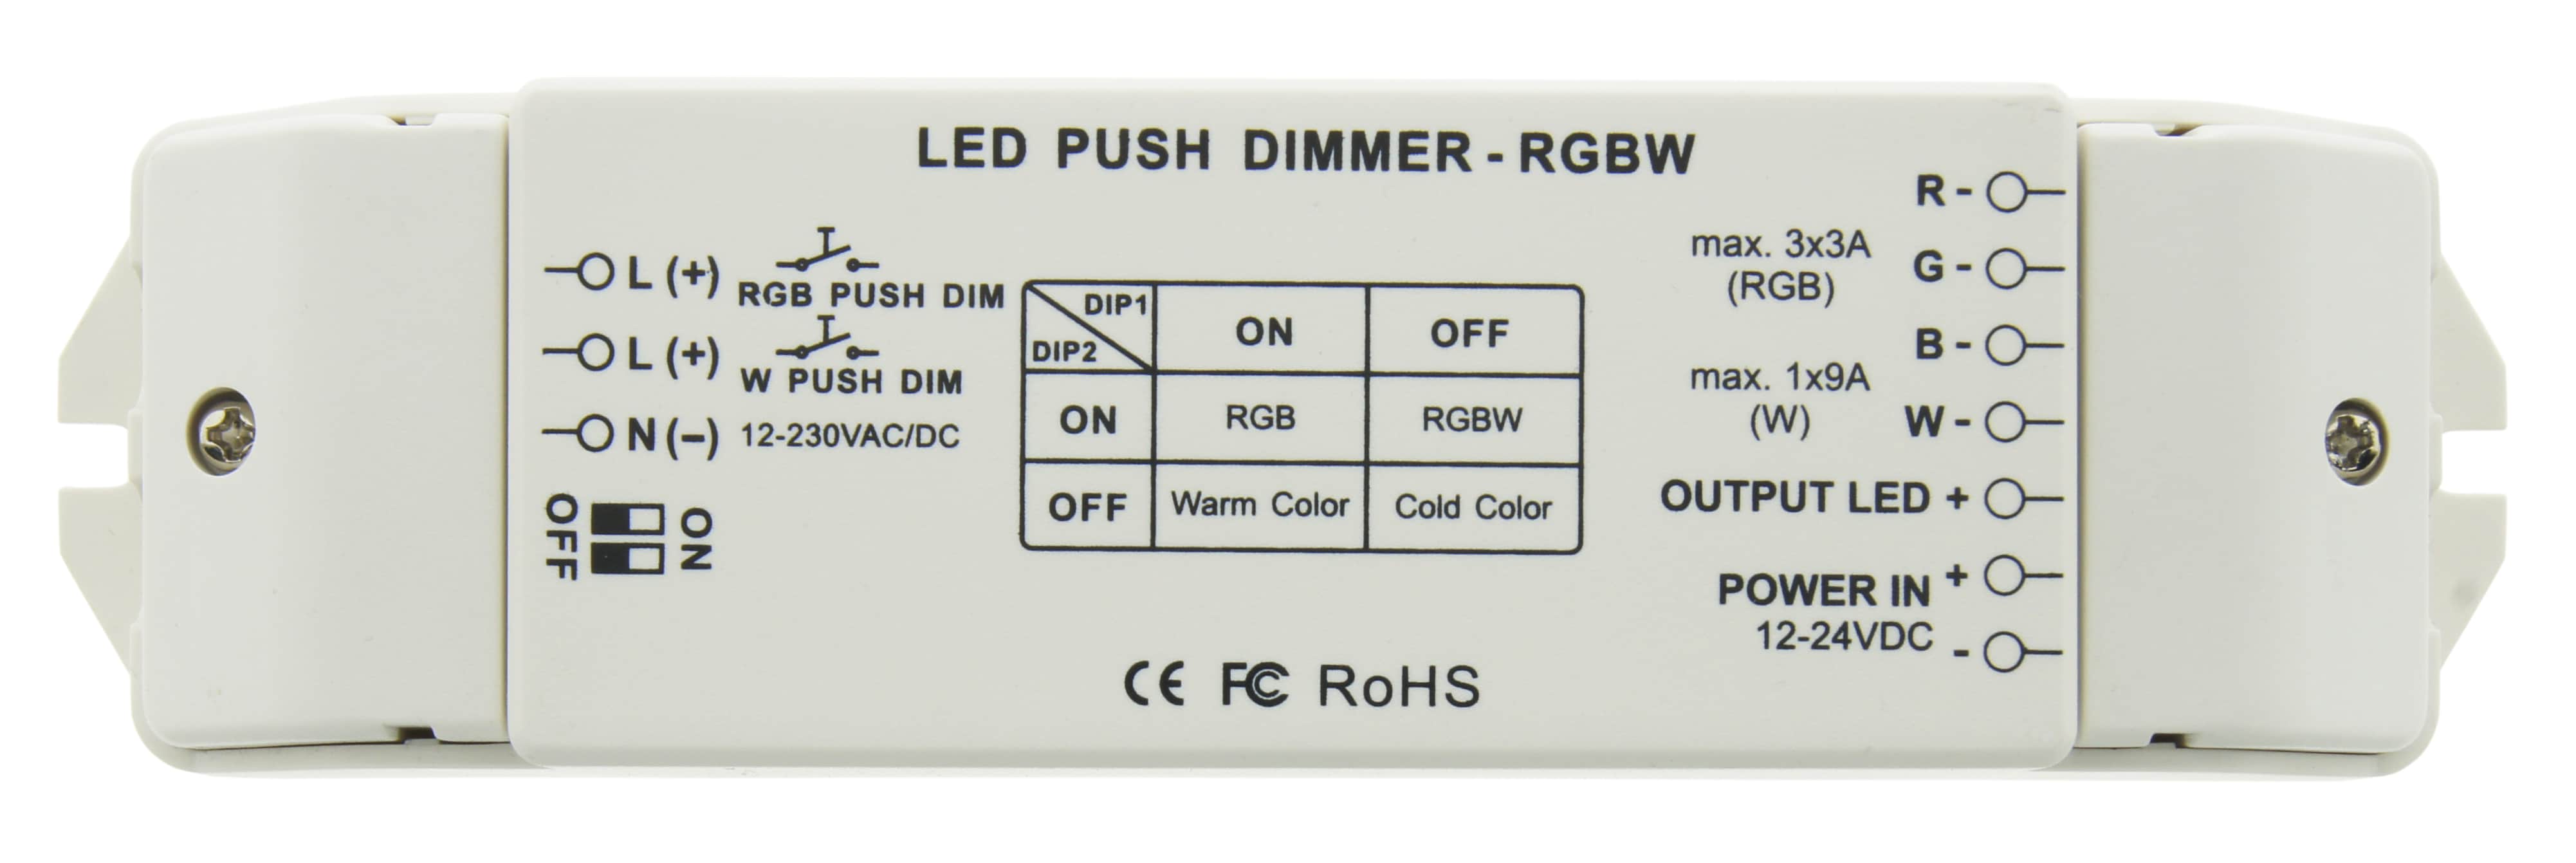 https://autled.com/daten/foto/Produktfoto_LED-Push-Dimmer-RGBW_1_v1.jpg